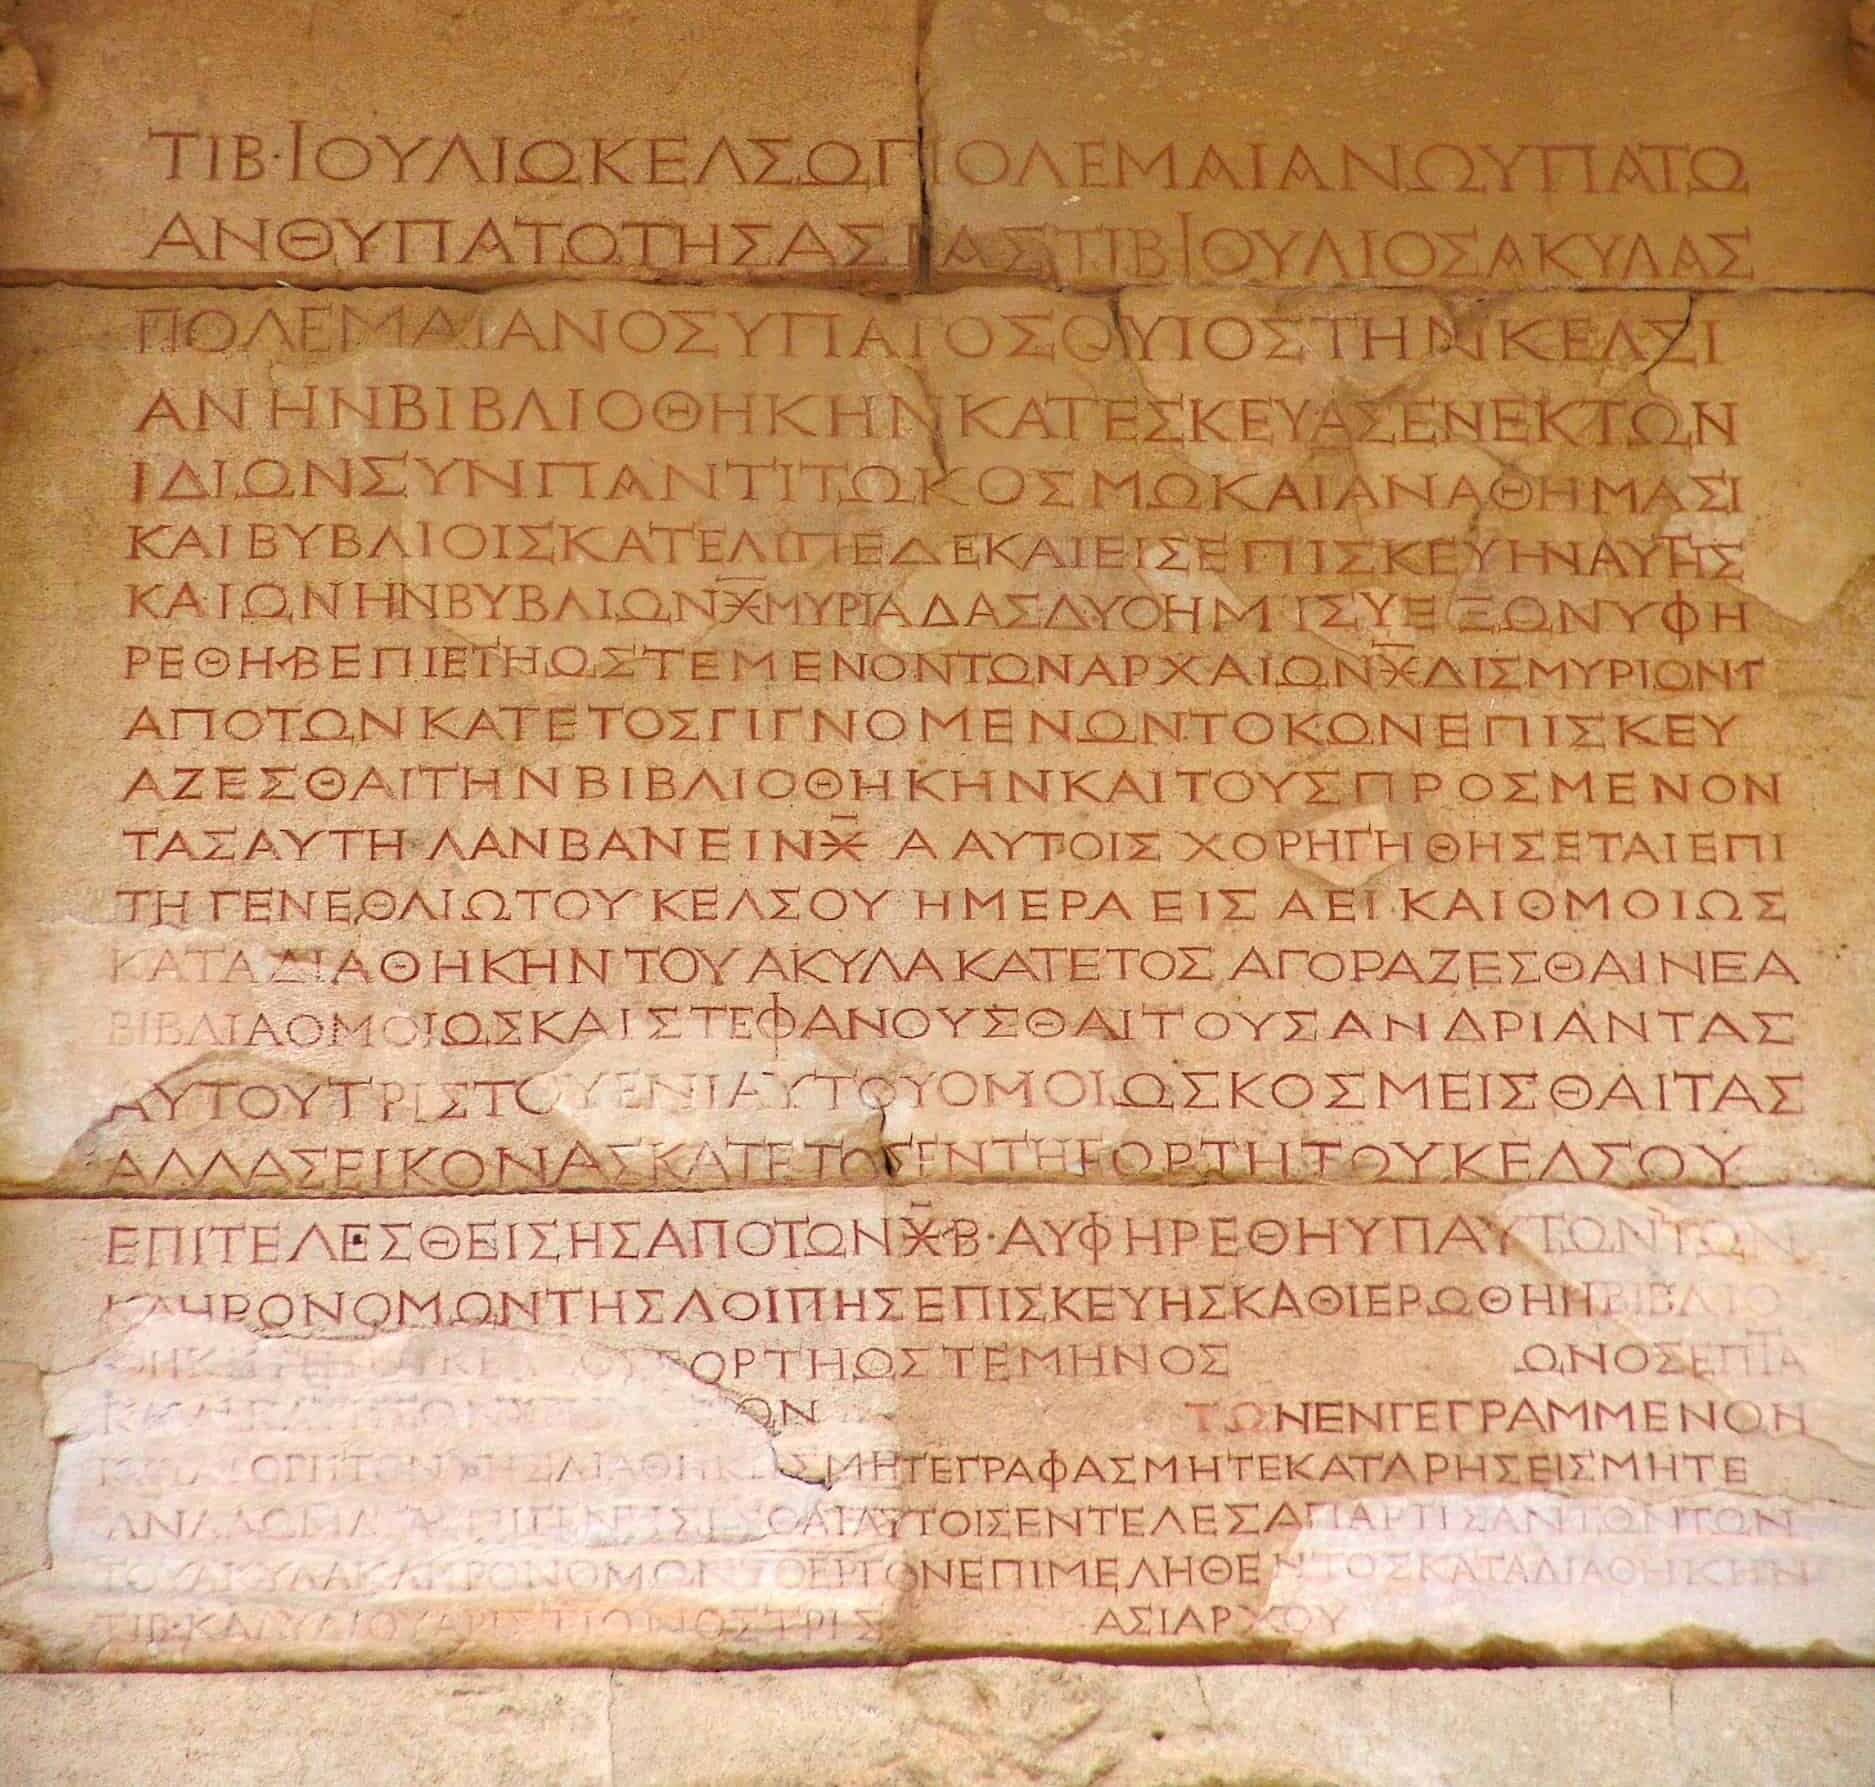 Will of Tiberius Julius Celsus Polemaeanus at the Library of Celsus in Ephesus